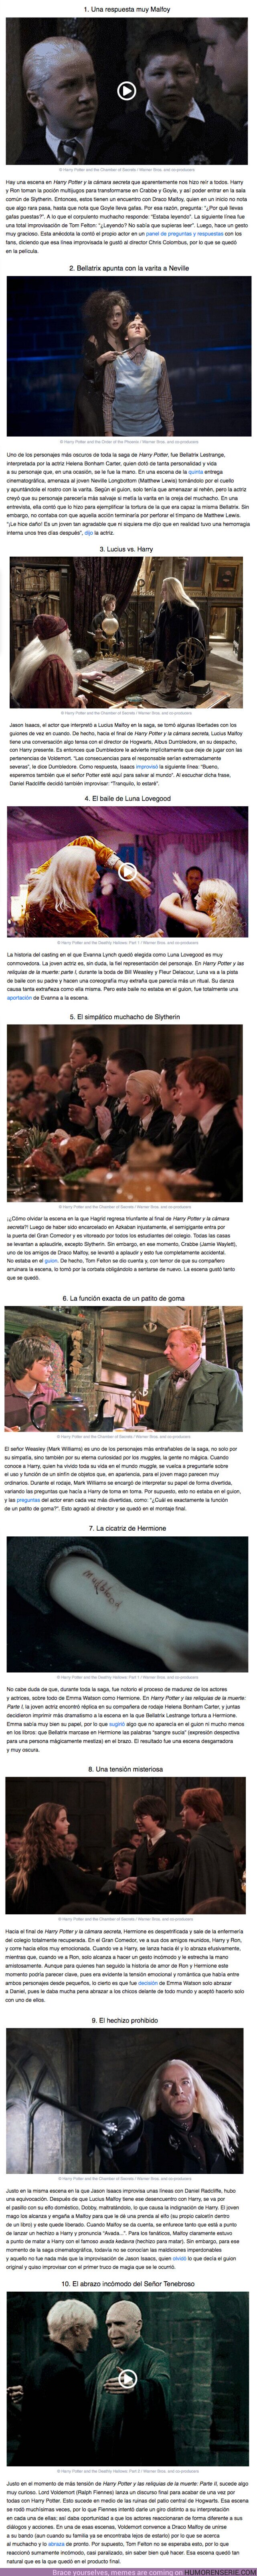 58967 - GALERÍA: 10 Momentos de las películas de Harry Potter que en realidad fueron geniales ocurrencias de los actores